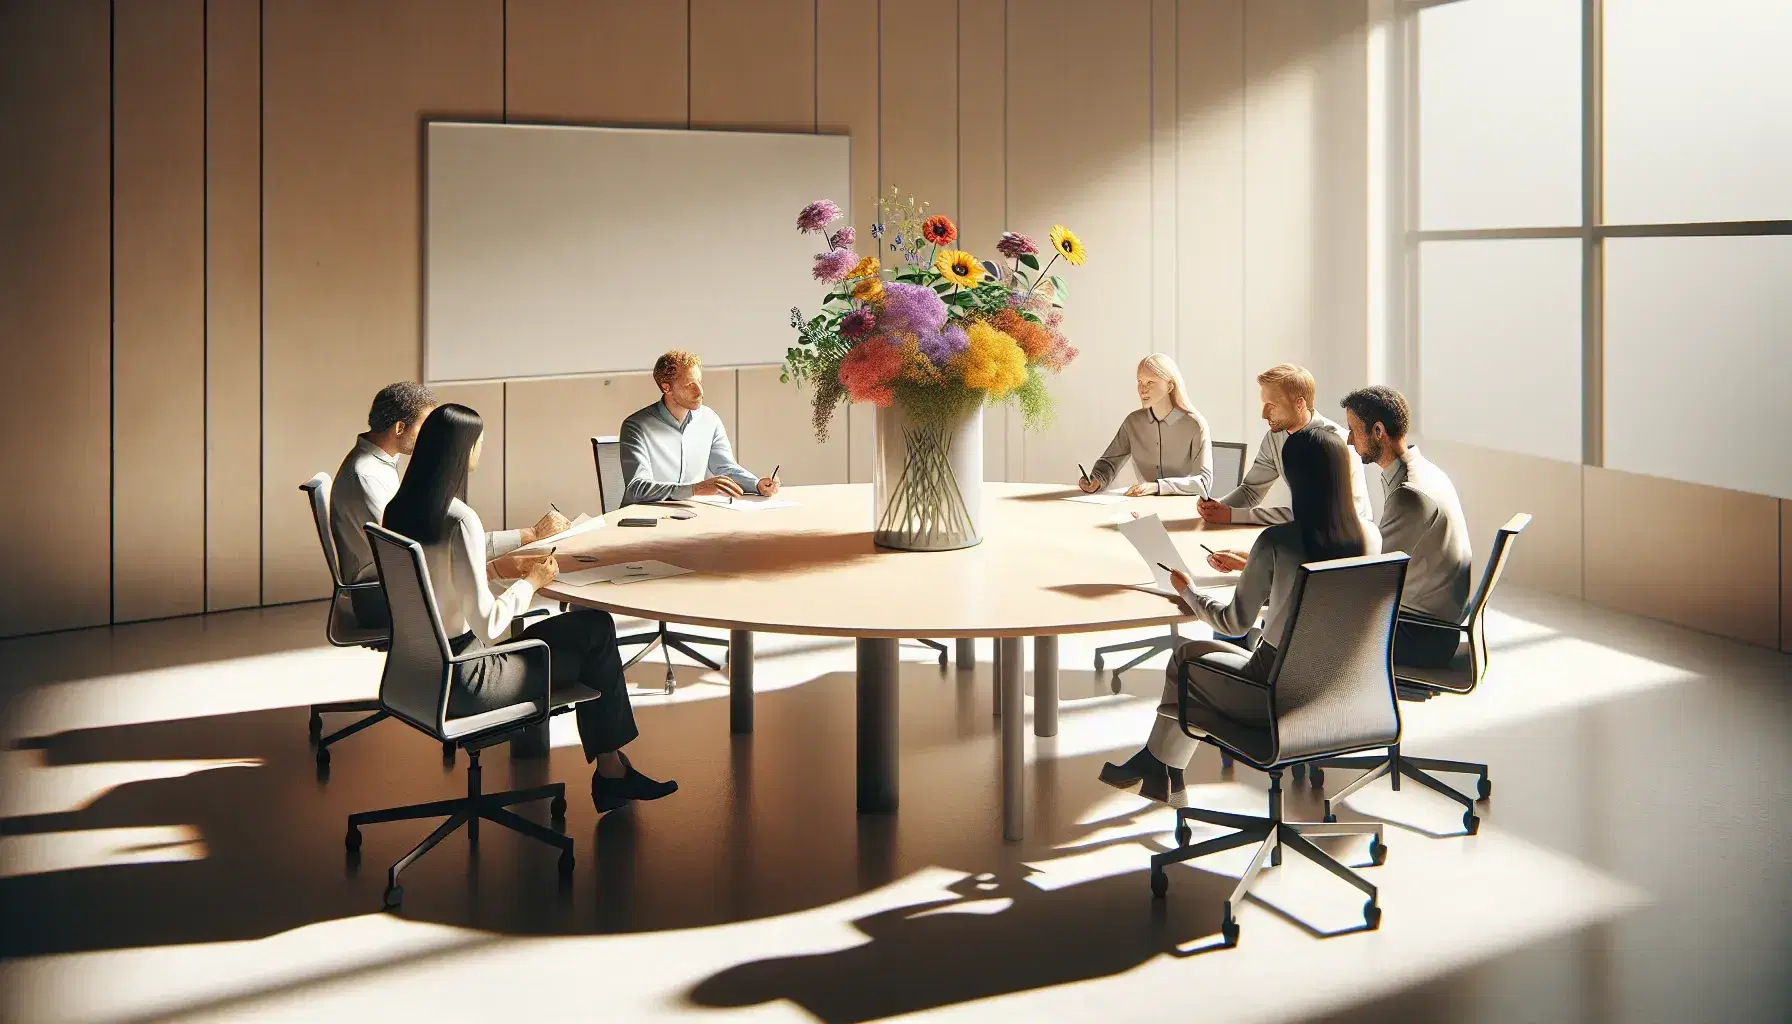 Grupo de siete personas colaborando en una reunión alrededor de una mesa redonda con flores coloridas en un jarrón transparente en una oficina iluminada.